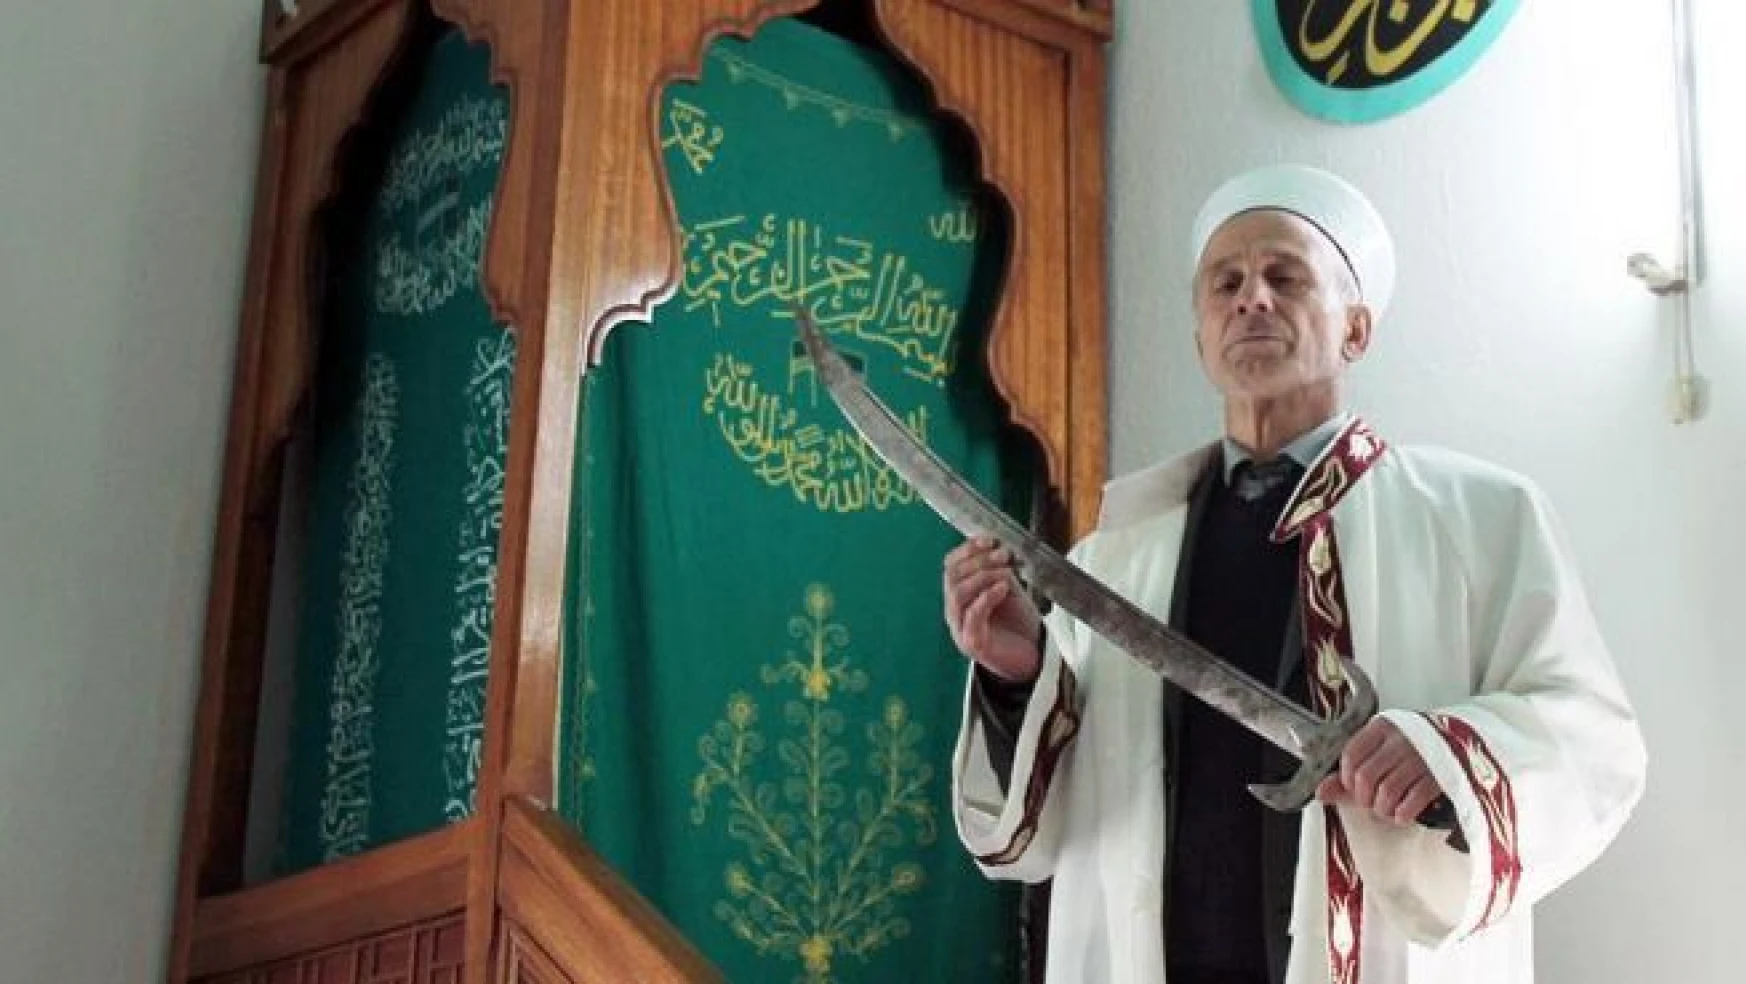 'Kılıçlı Cami'de imam hutbeyi kılıçla okuyor